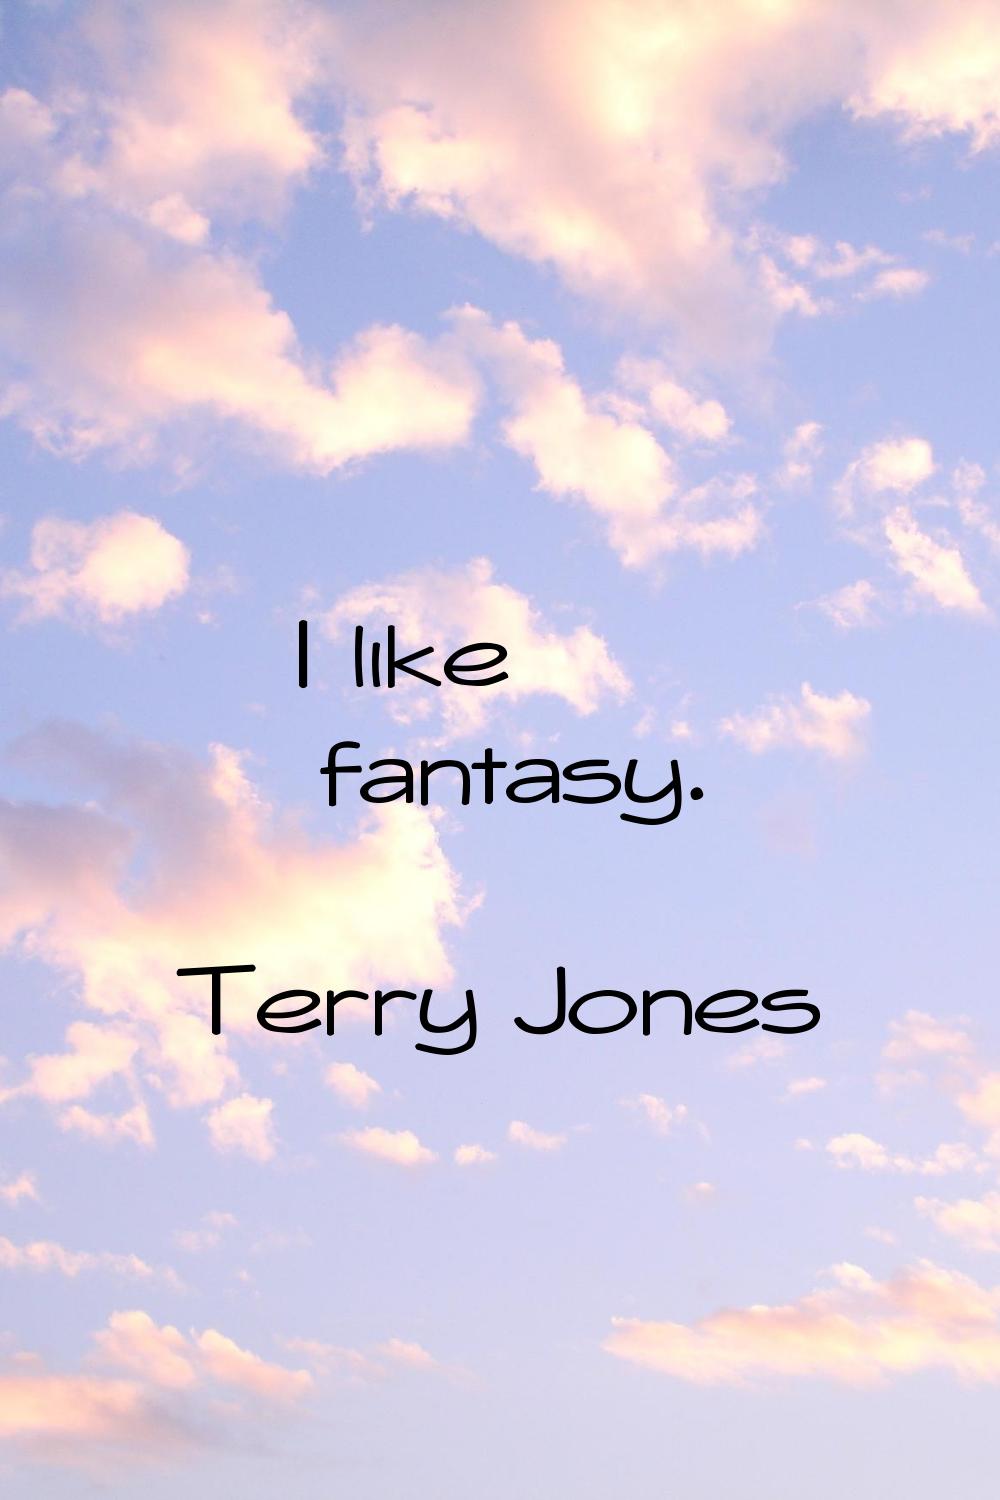 I like fantasy.